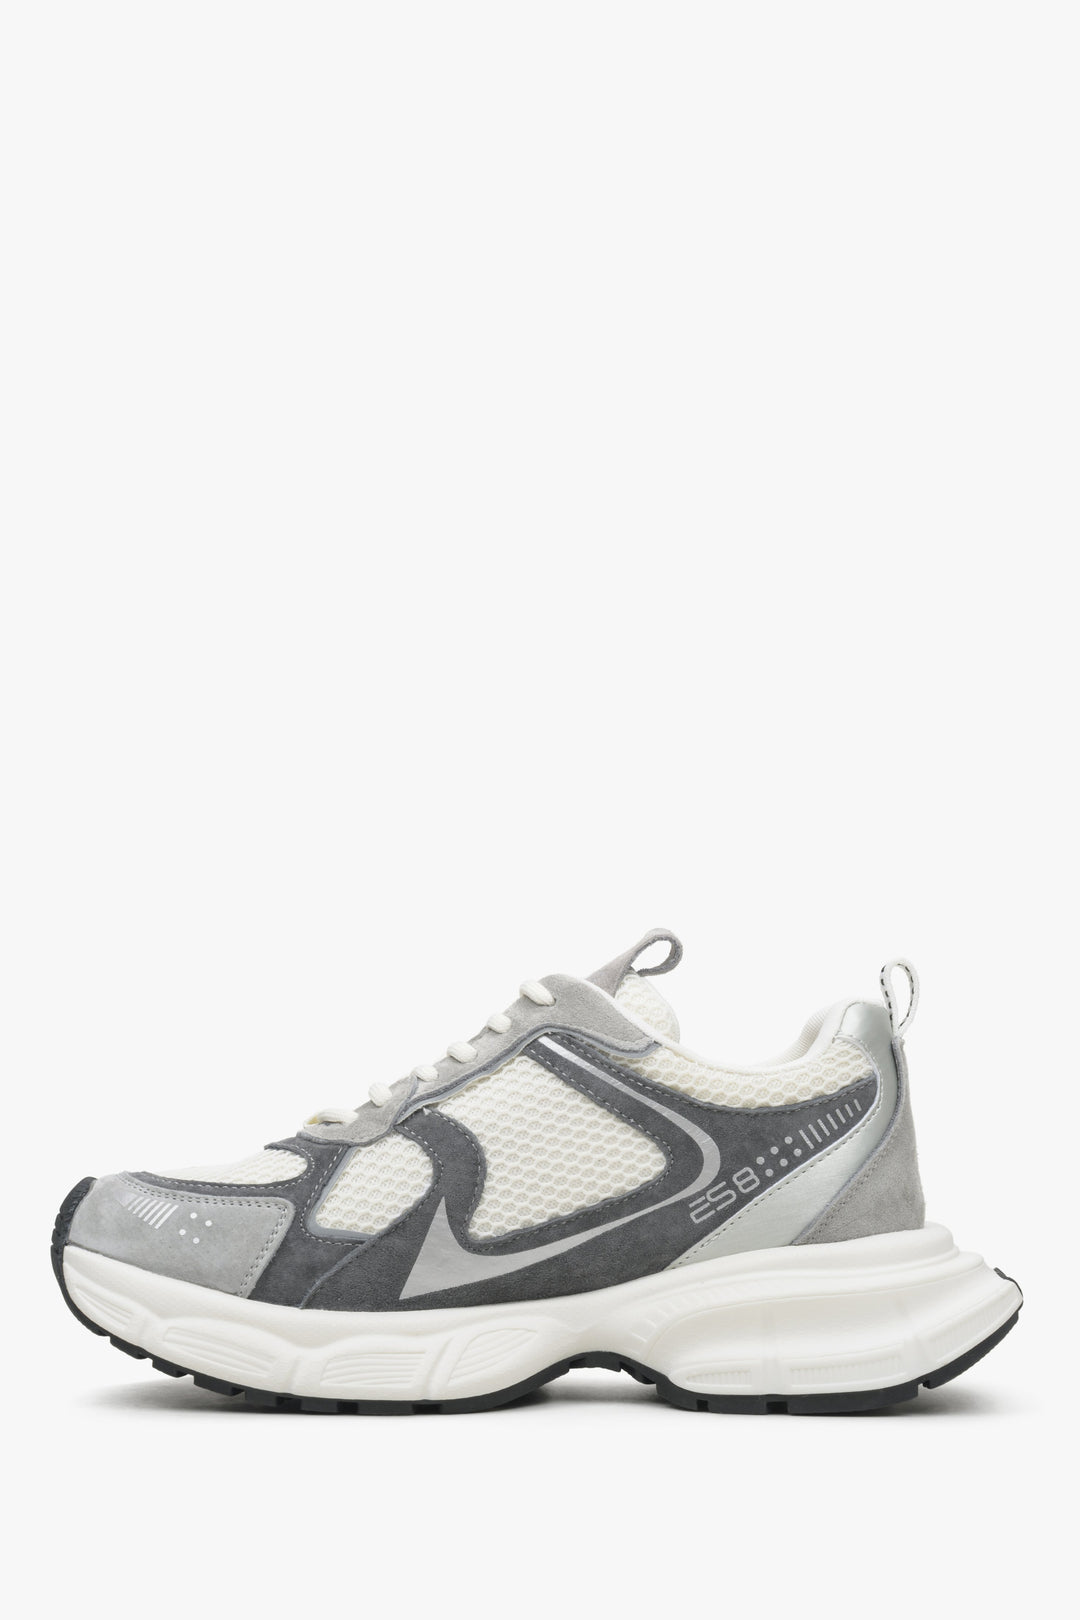 Wygodne sneakersy damskie ES8 w kolorze szaro-białym - profil buta.